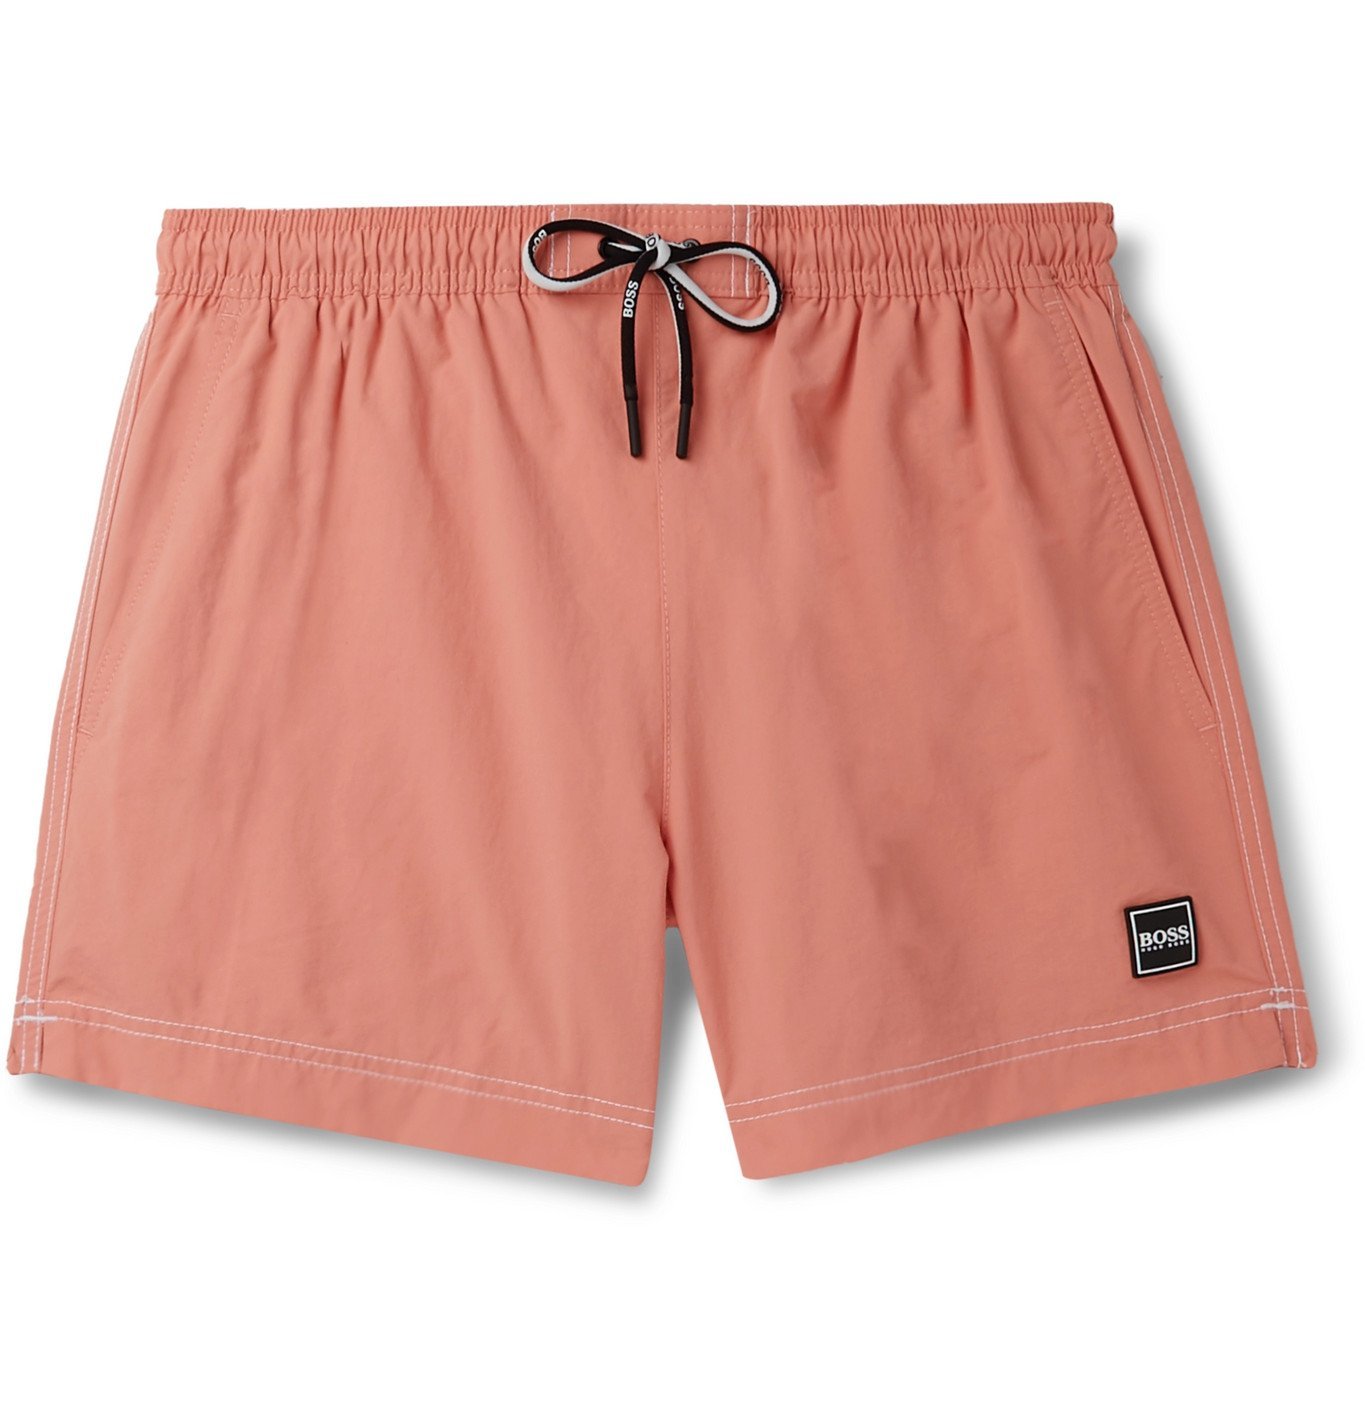 orange hugo boss shorts